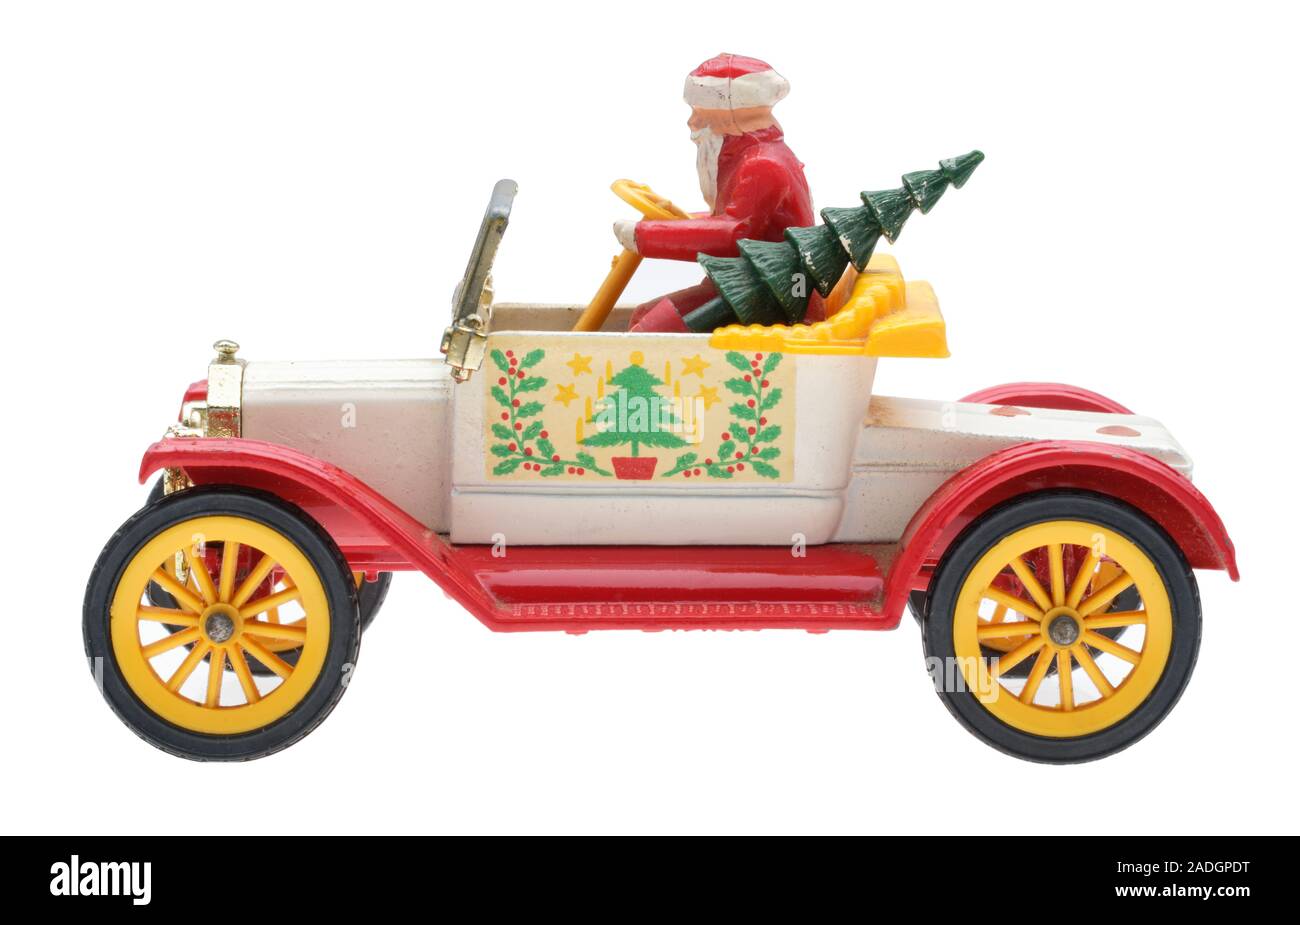 Babbo Natale in un vecchio Ford Motor Car. Dinky metallo pressofuso giocattolo con Santa e un albero di Natale. Foto Stock